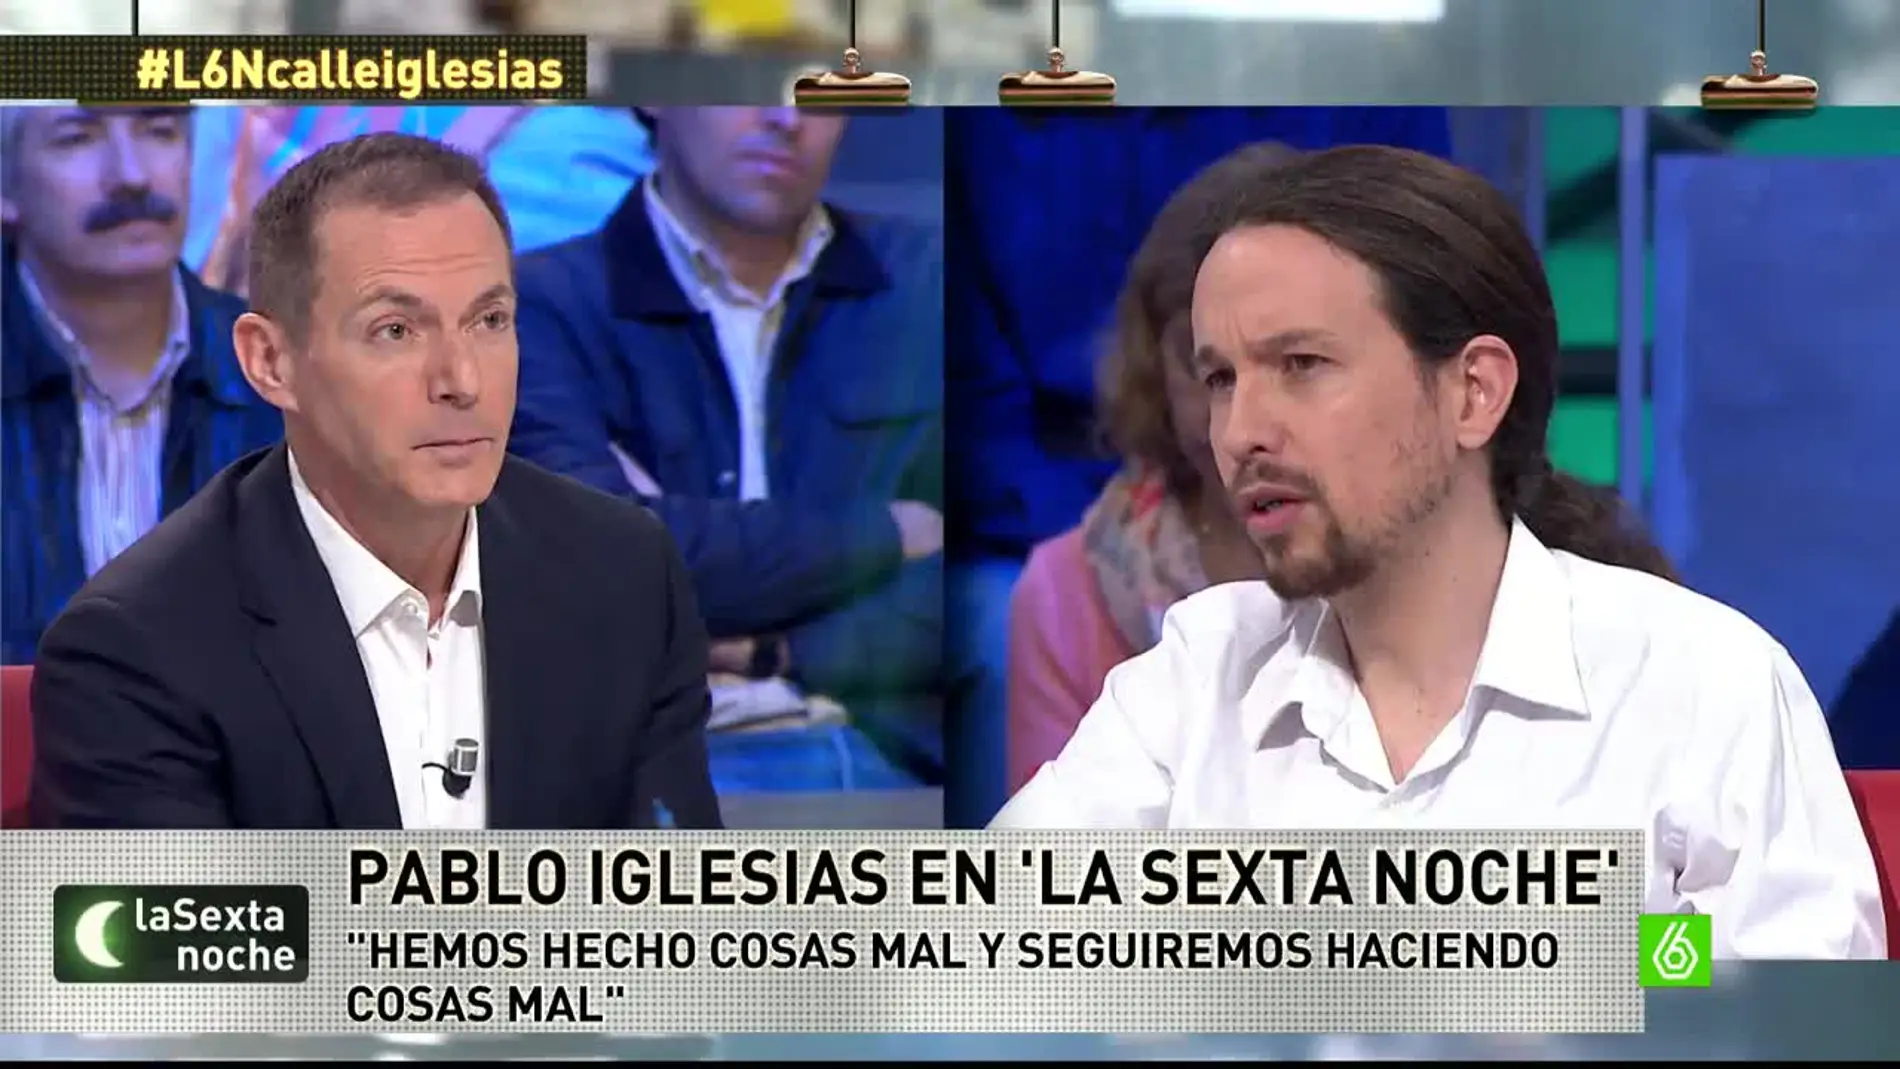 Pablo Iglesias: "Seguramente, hemos hecho cosas mal porque somos humanos, pero hemos devuelto la ilusión"